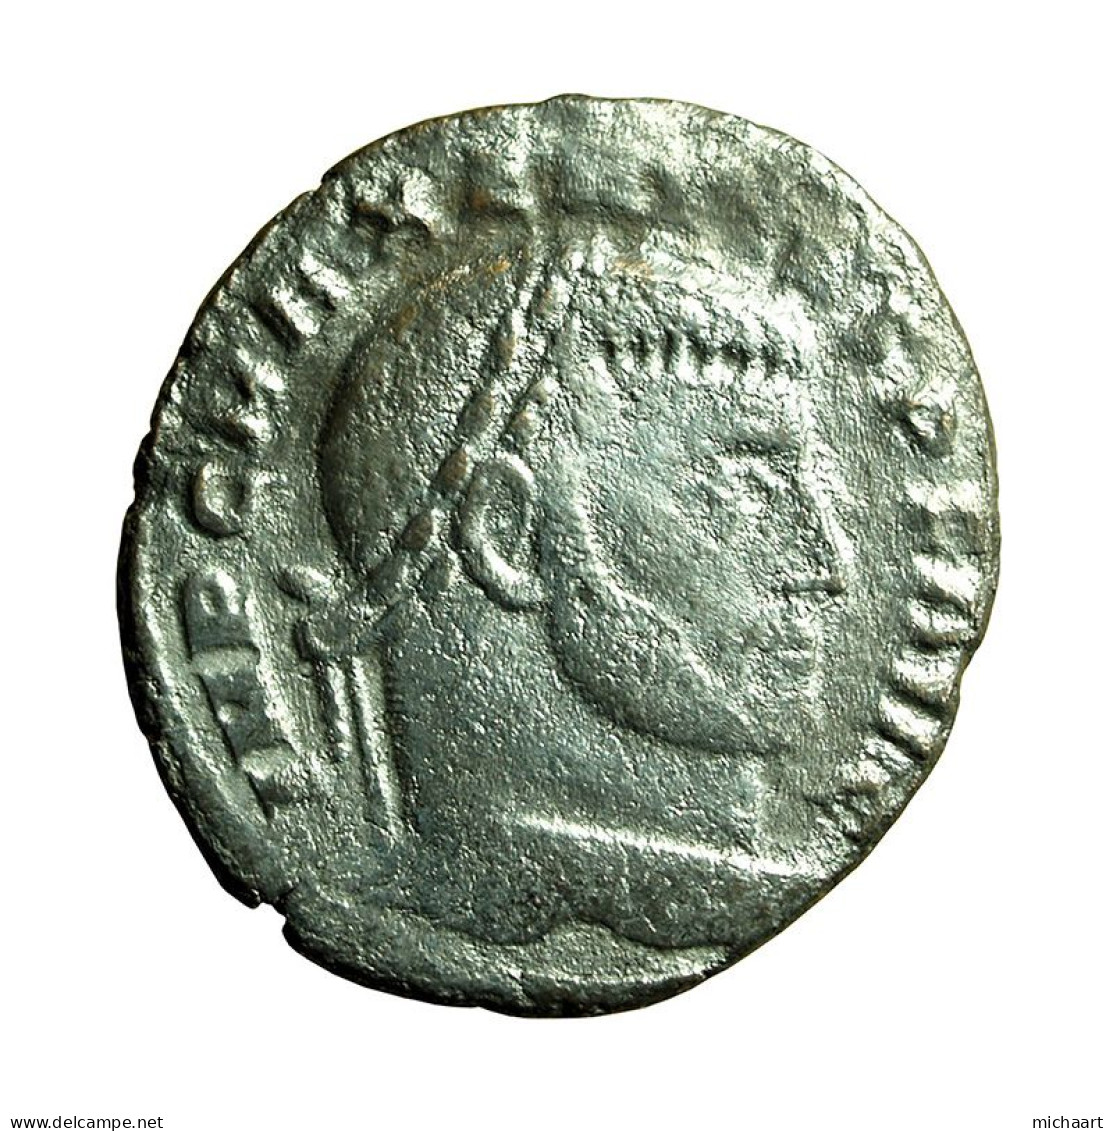 Roman Coin Maxentius Follis Ostia AE23mm Head / Dioscuri 03987 - L'Empire Chrétien (307 à 363)